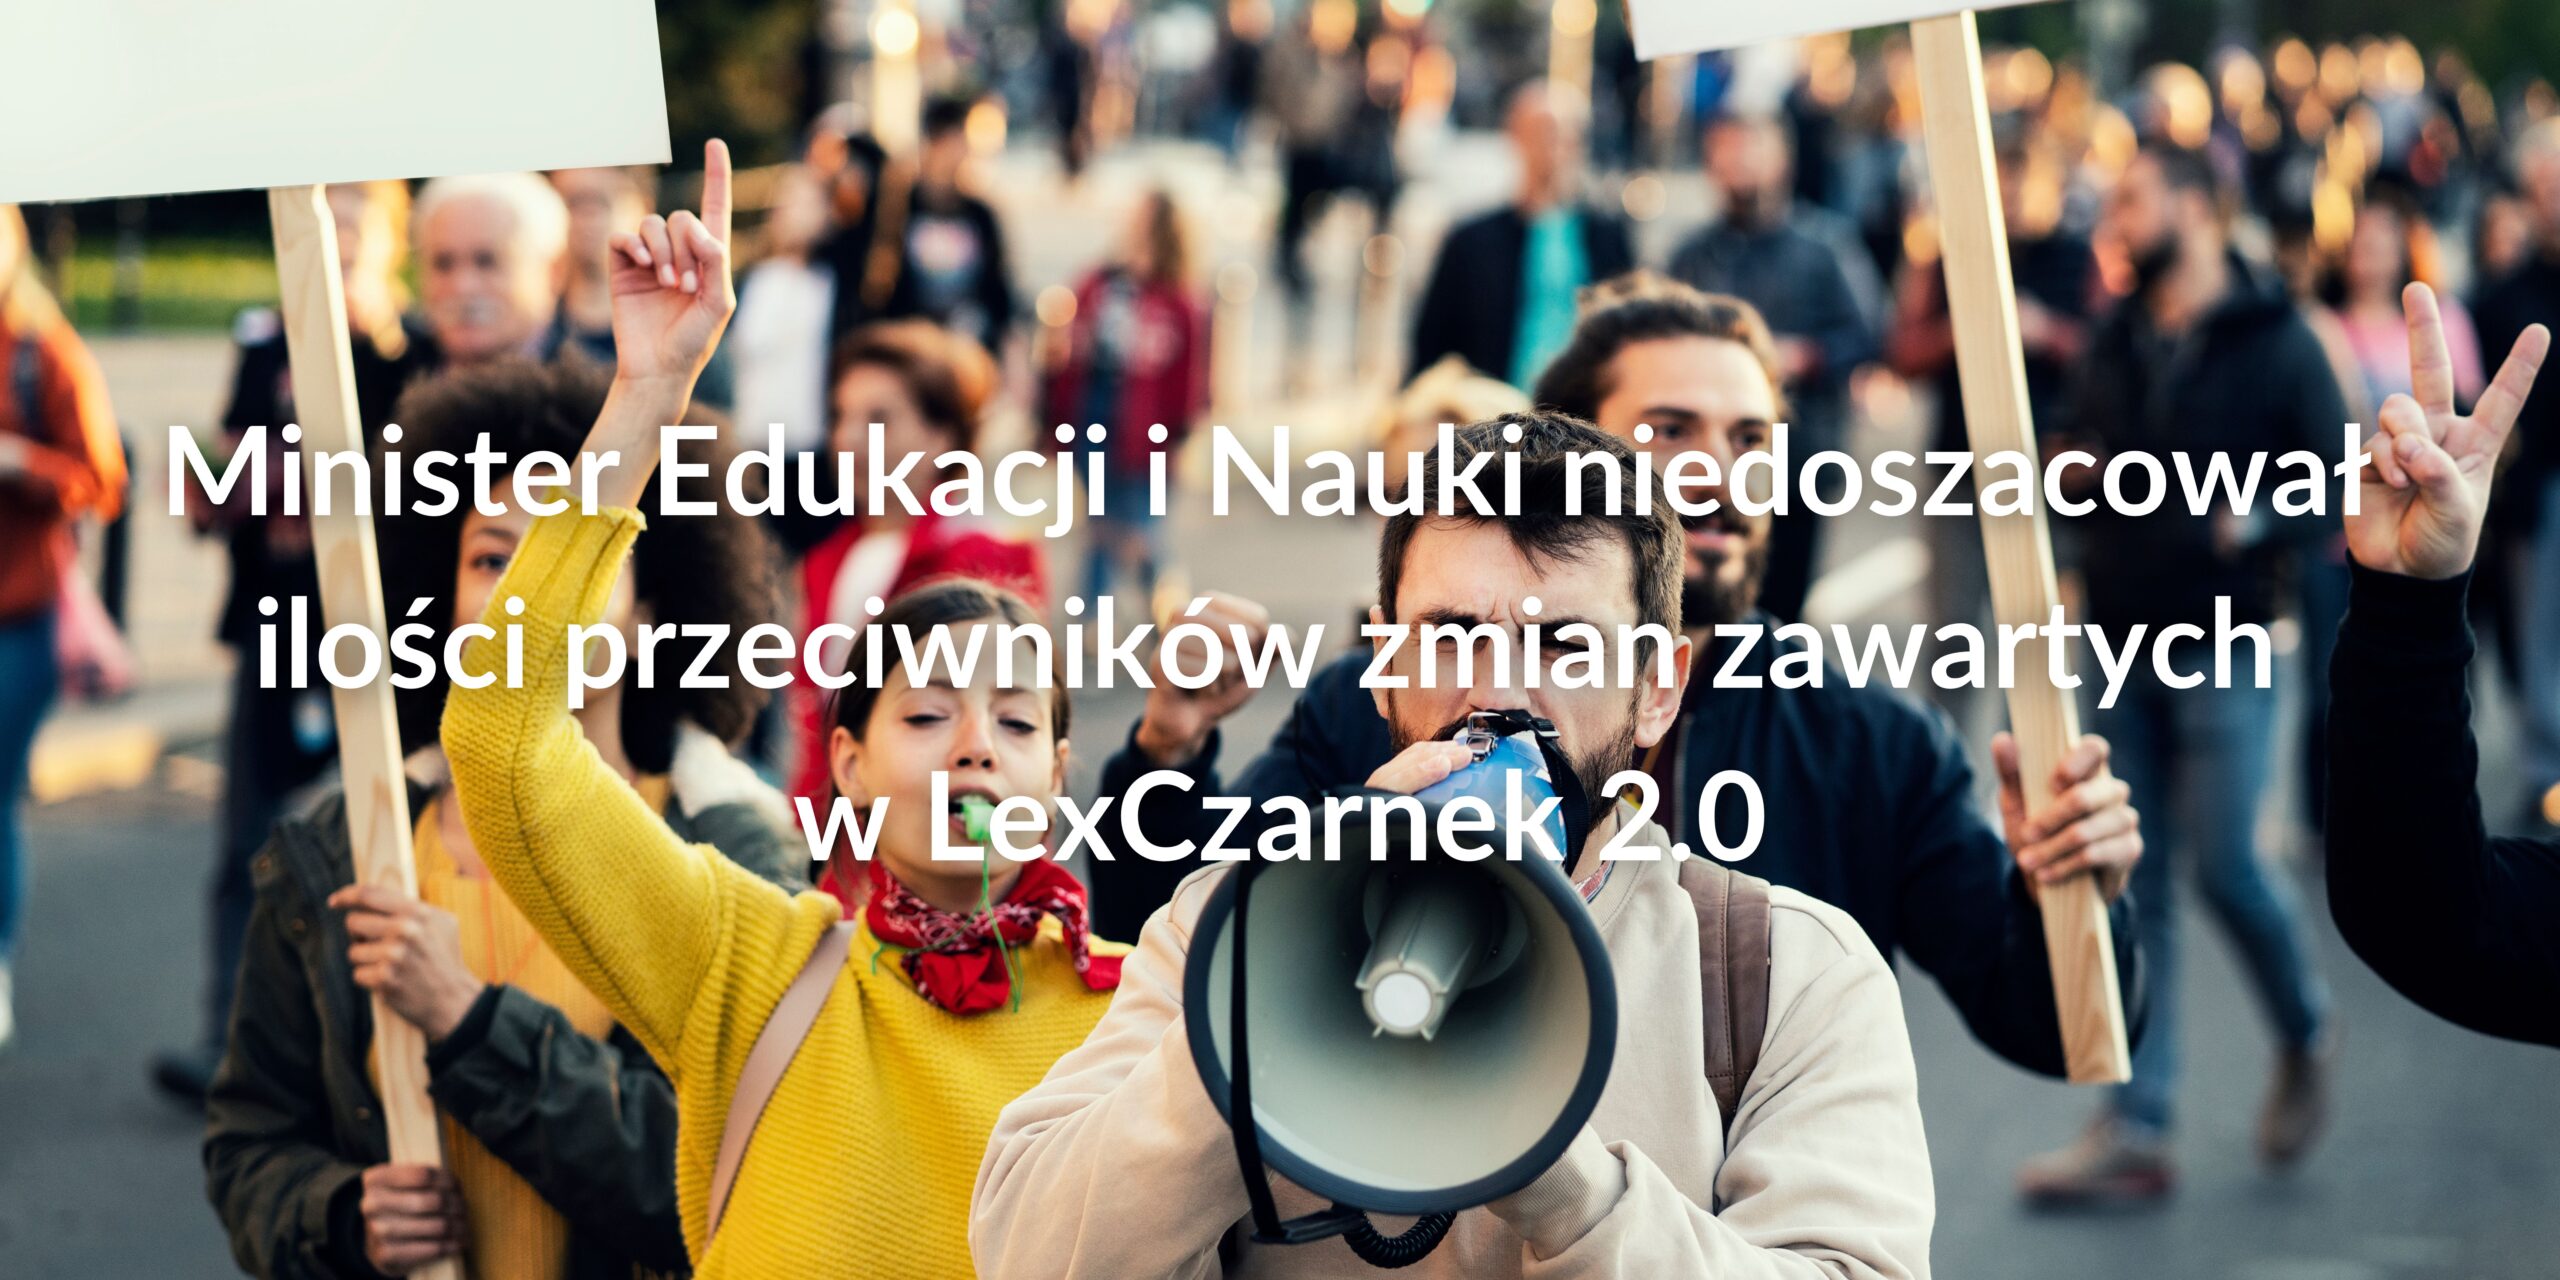 Minister Edukacji i Nauki niedoszacował ilości przeciwników zmian zawartych w LexCzarnek 2.0